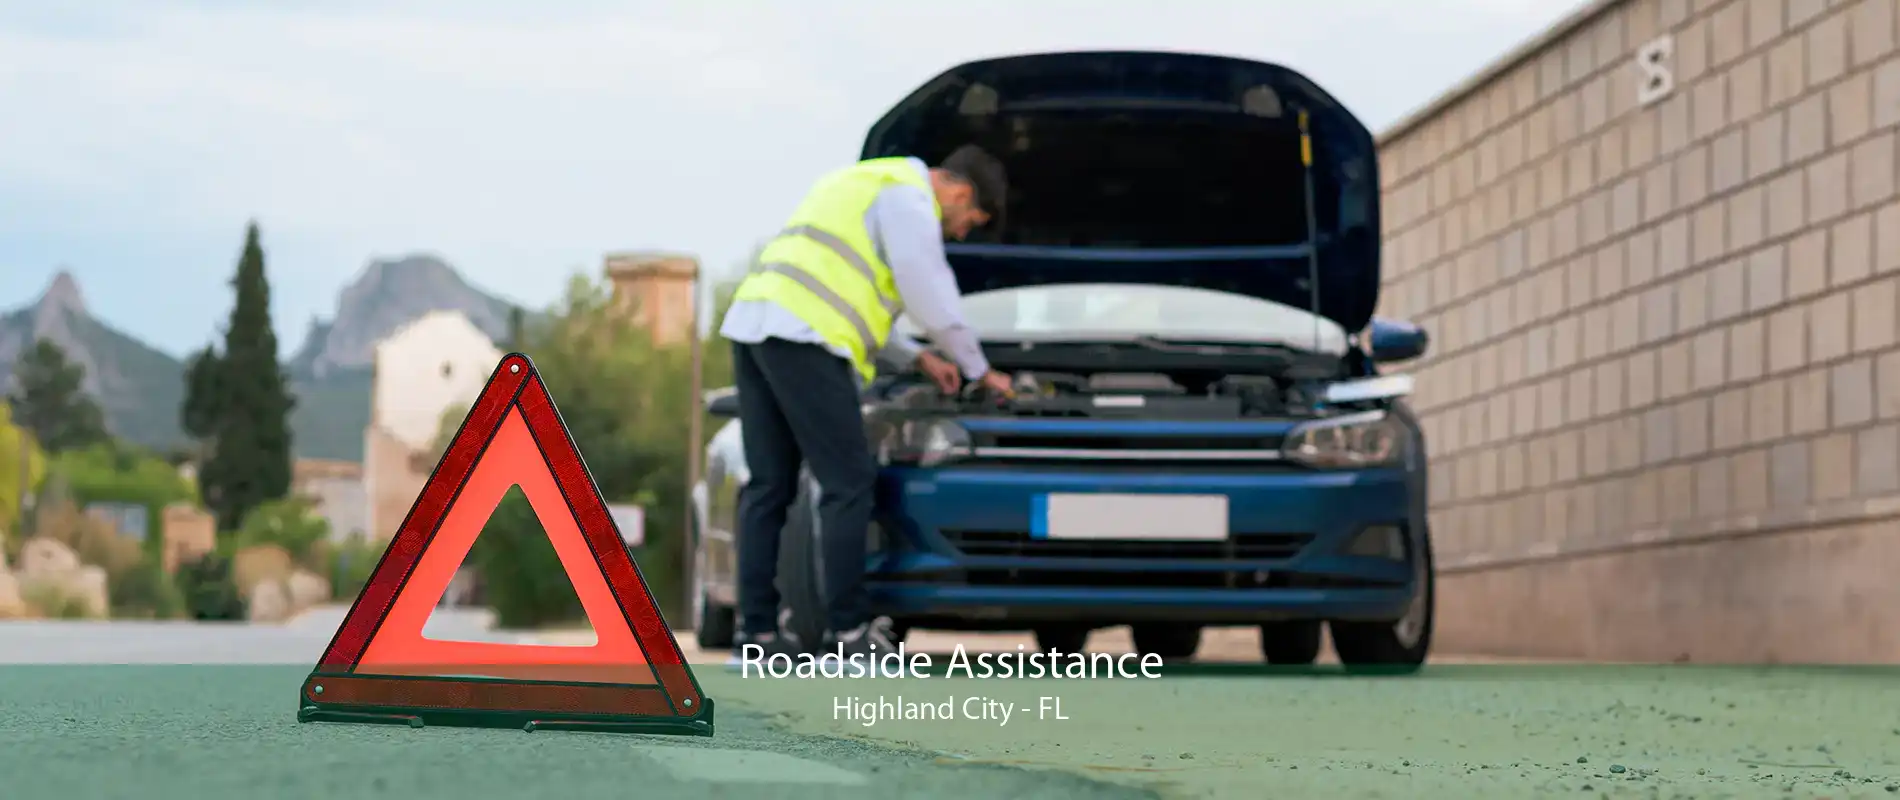 Roadside Assistance Highland City - FL